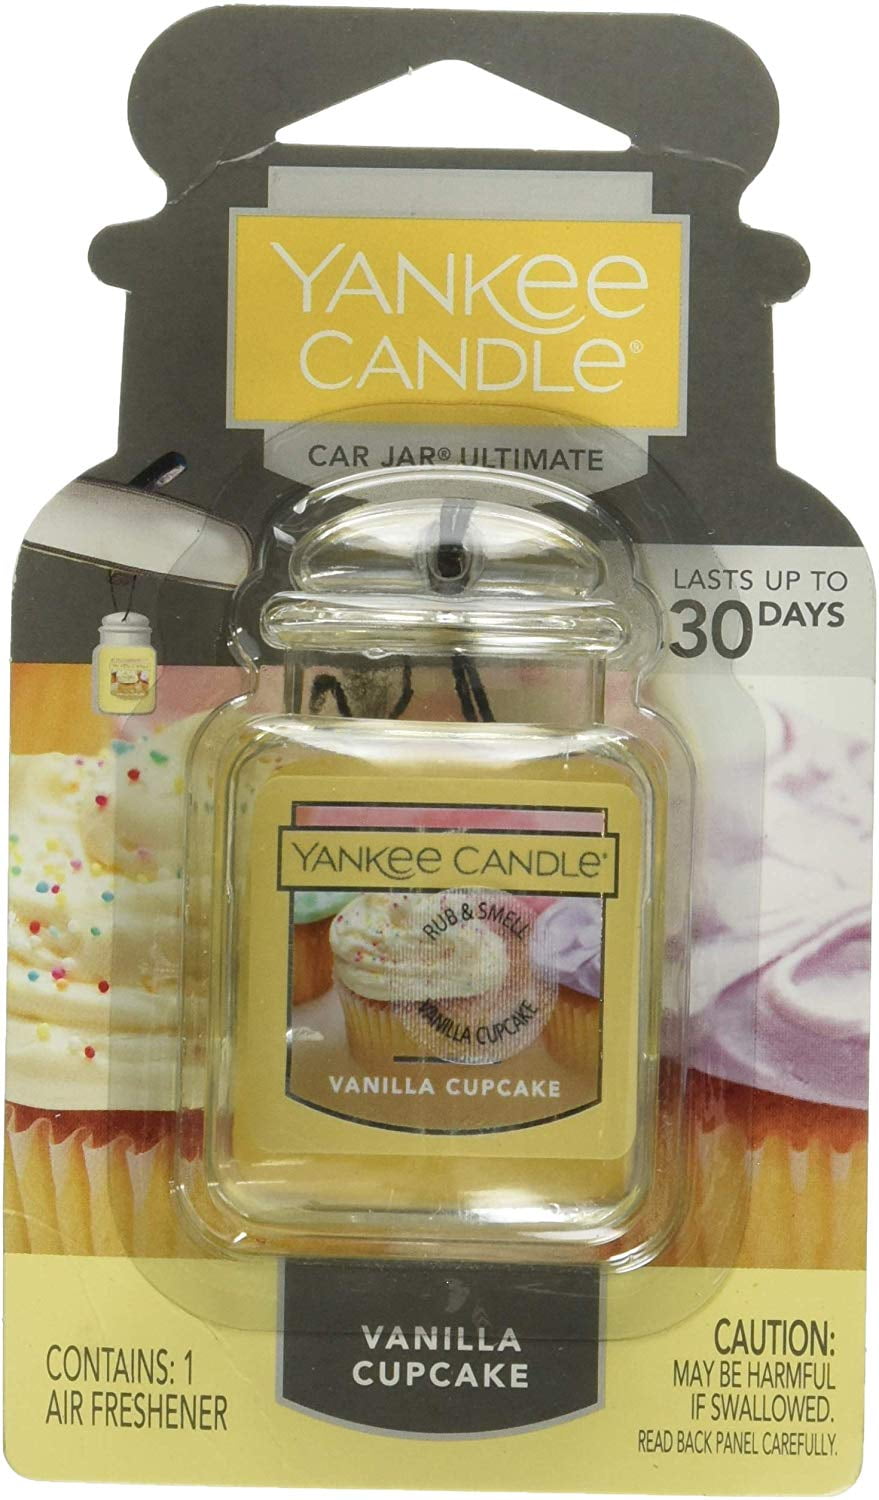 Yankee Candle Car Jar Ultimate Car Air Freshener, Vanilla Cupcake 1220923 